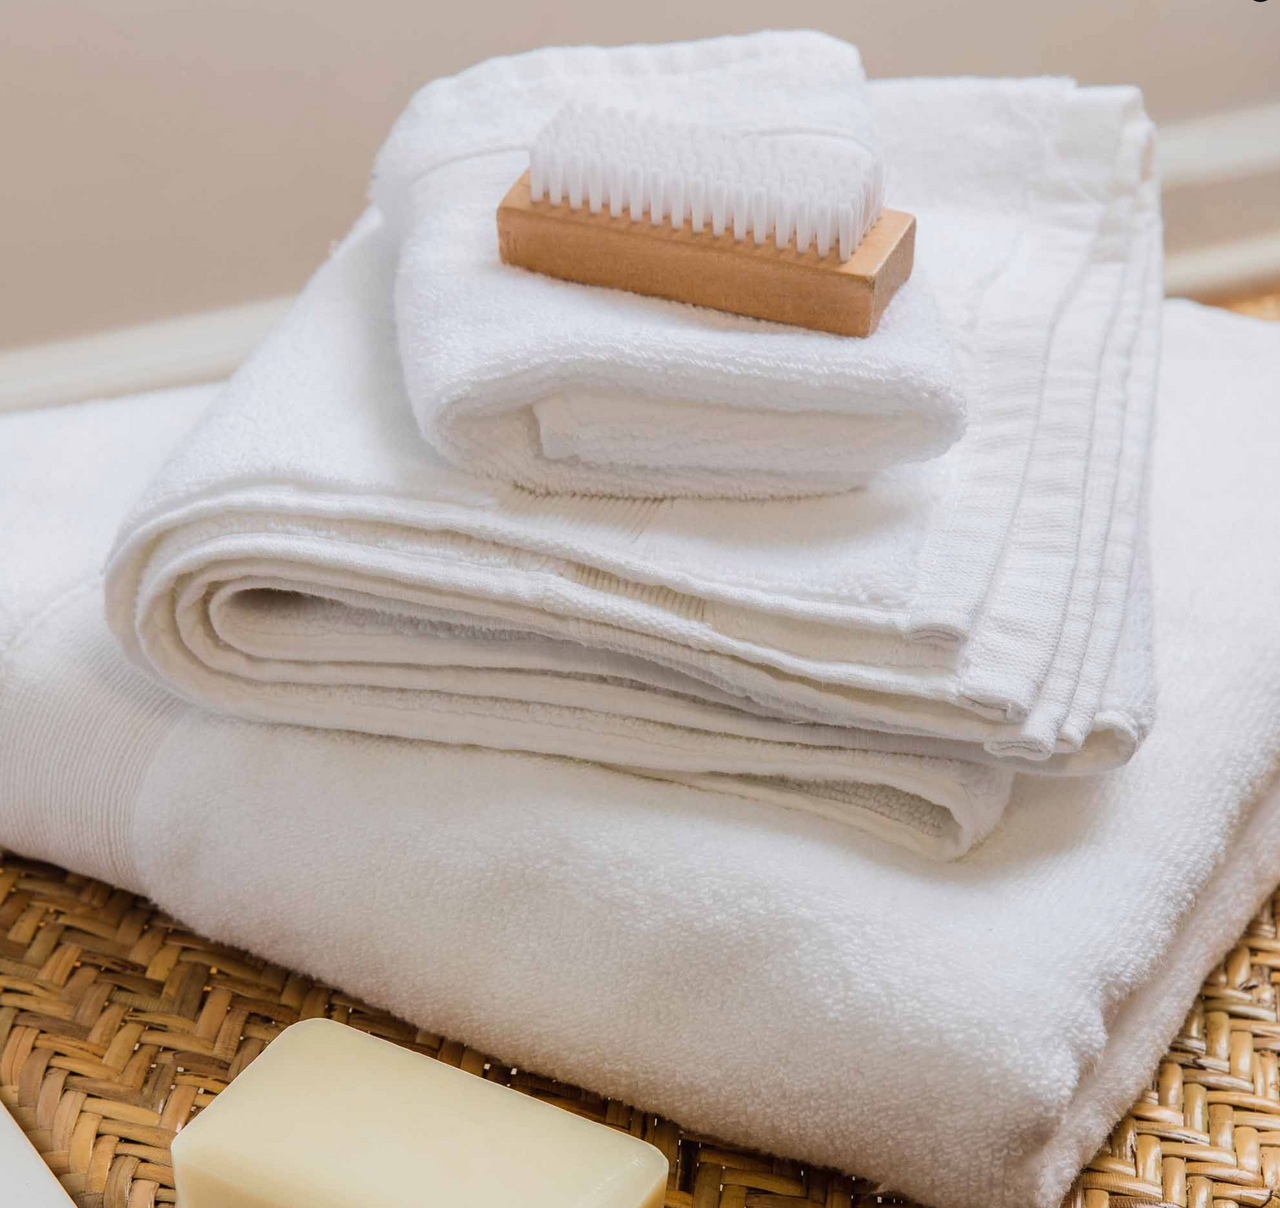 8pc Cotton Bath Towel Set Aqua